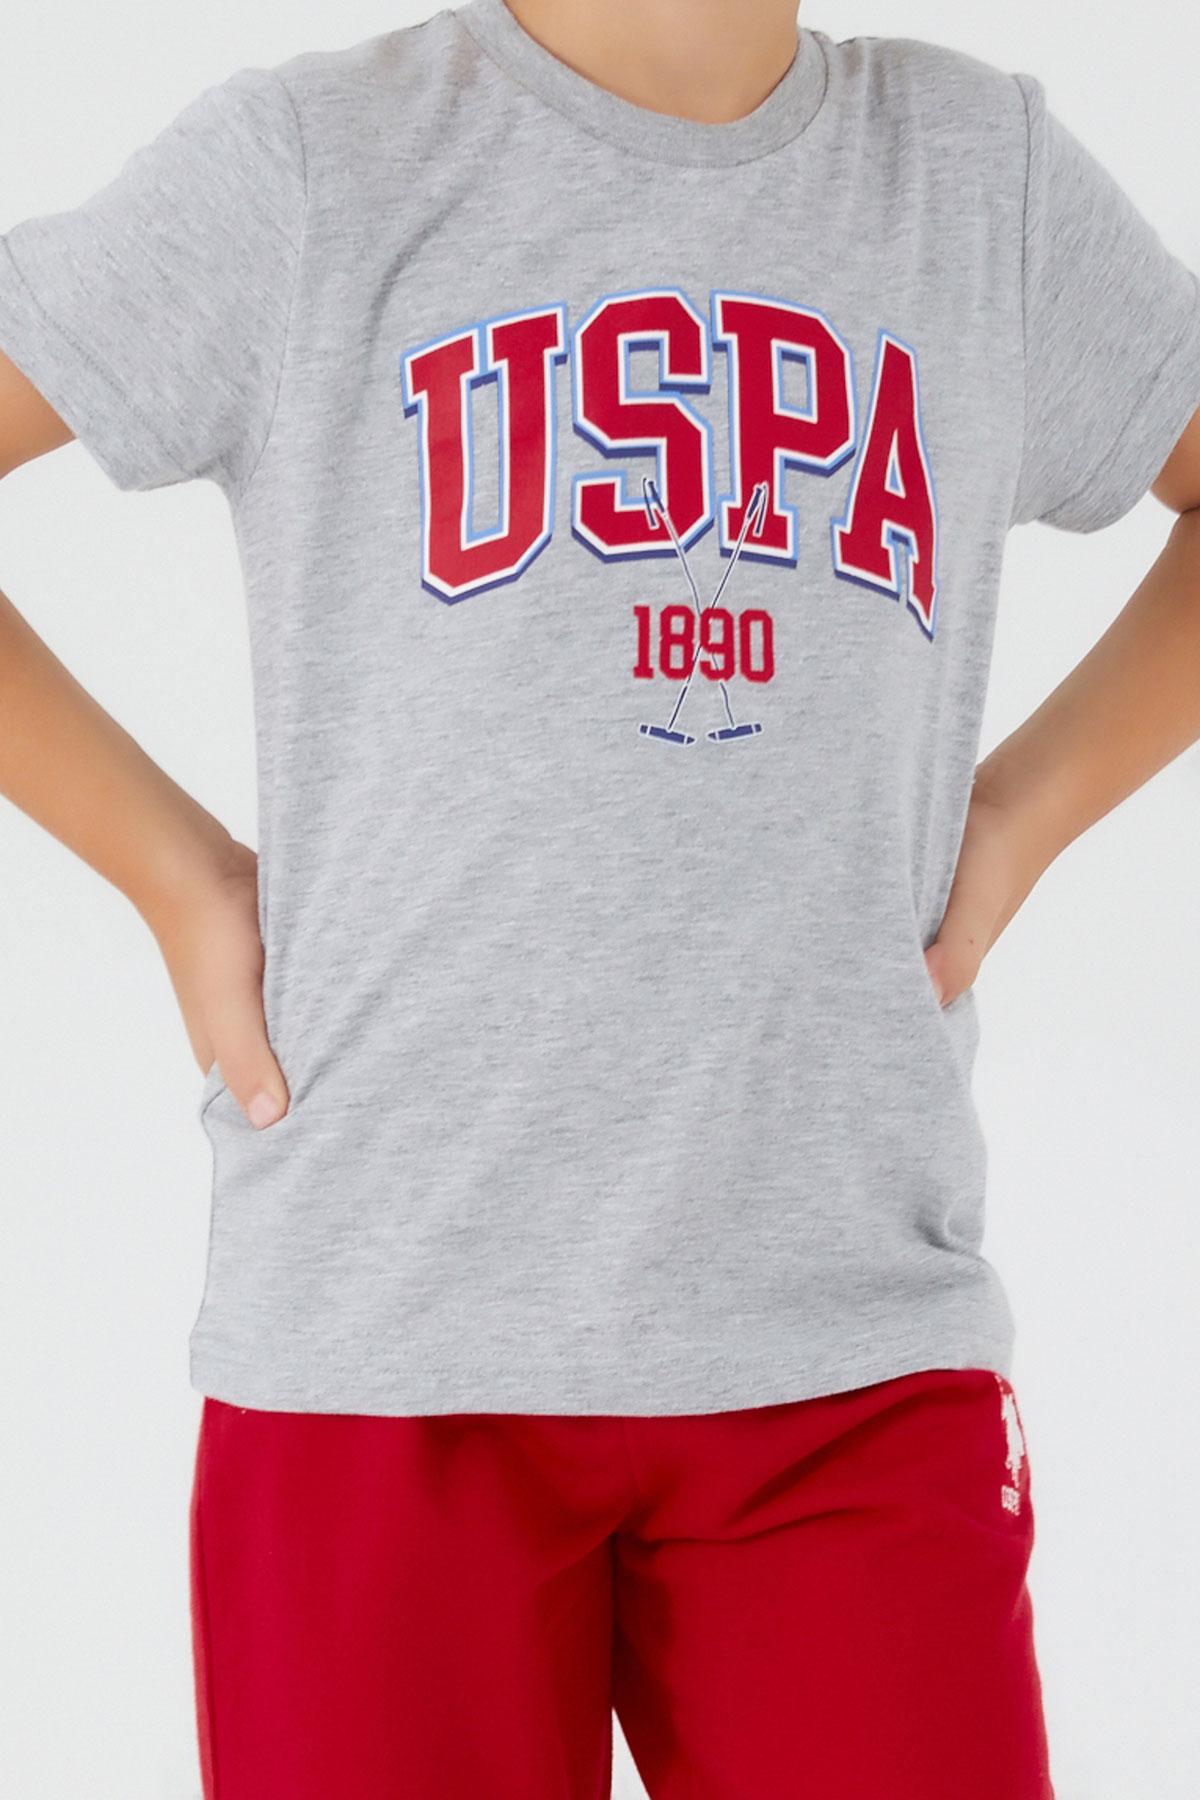 Selected image for U.S. POLO ASSN. Komplet šorc i majica za dečake US1351-4 crveno-sivi